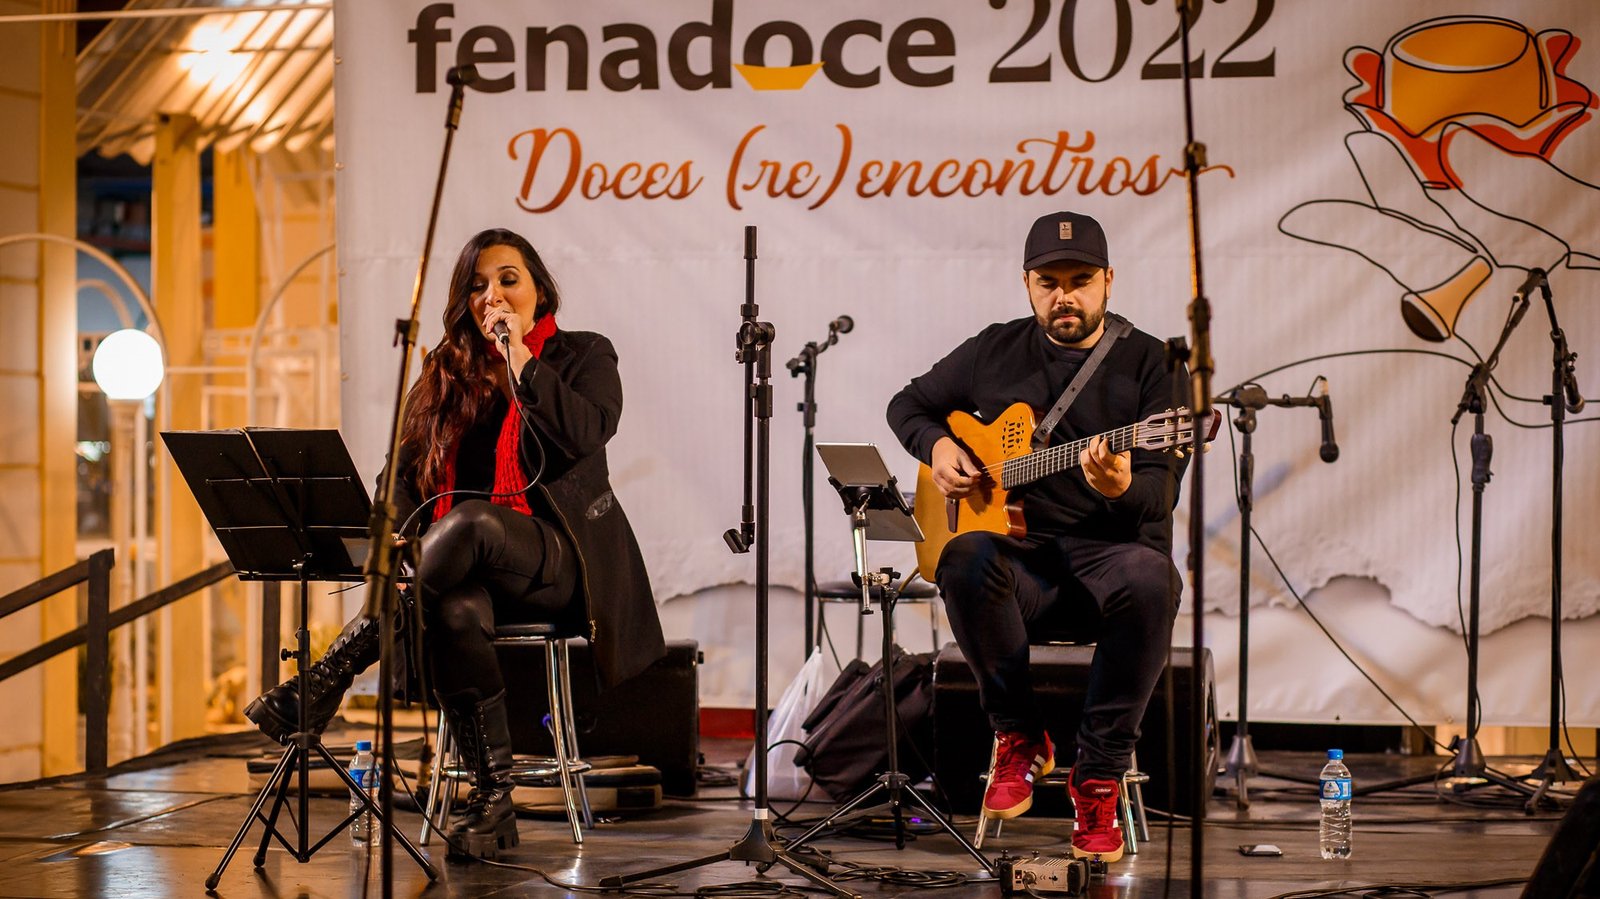 Fenadoce Cultural reuniu tradições gaúchas e músicas acústicas na noite deste sábado (11)